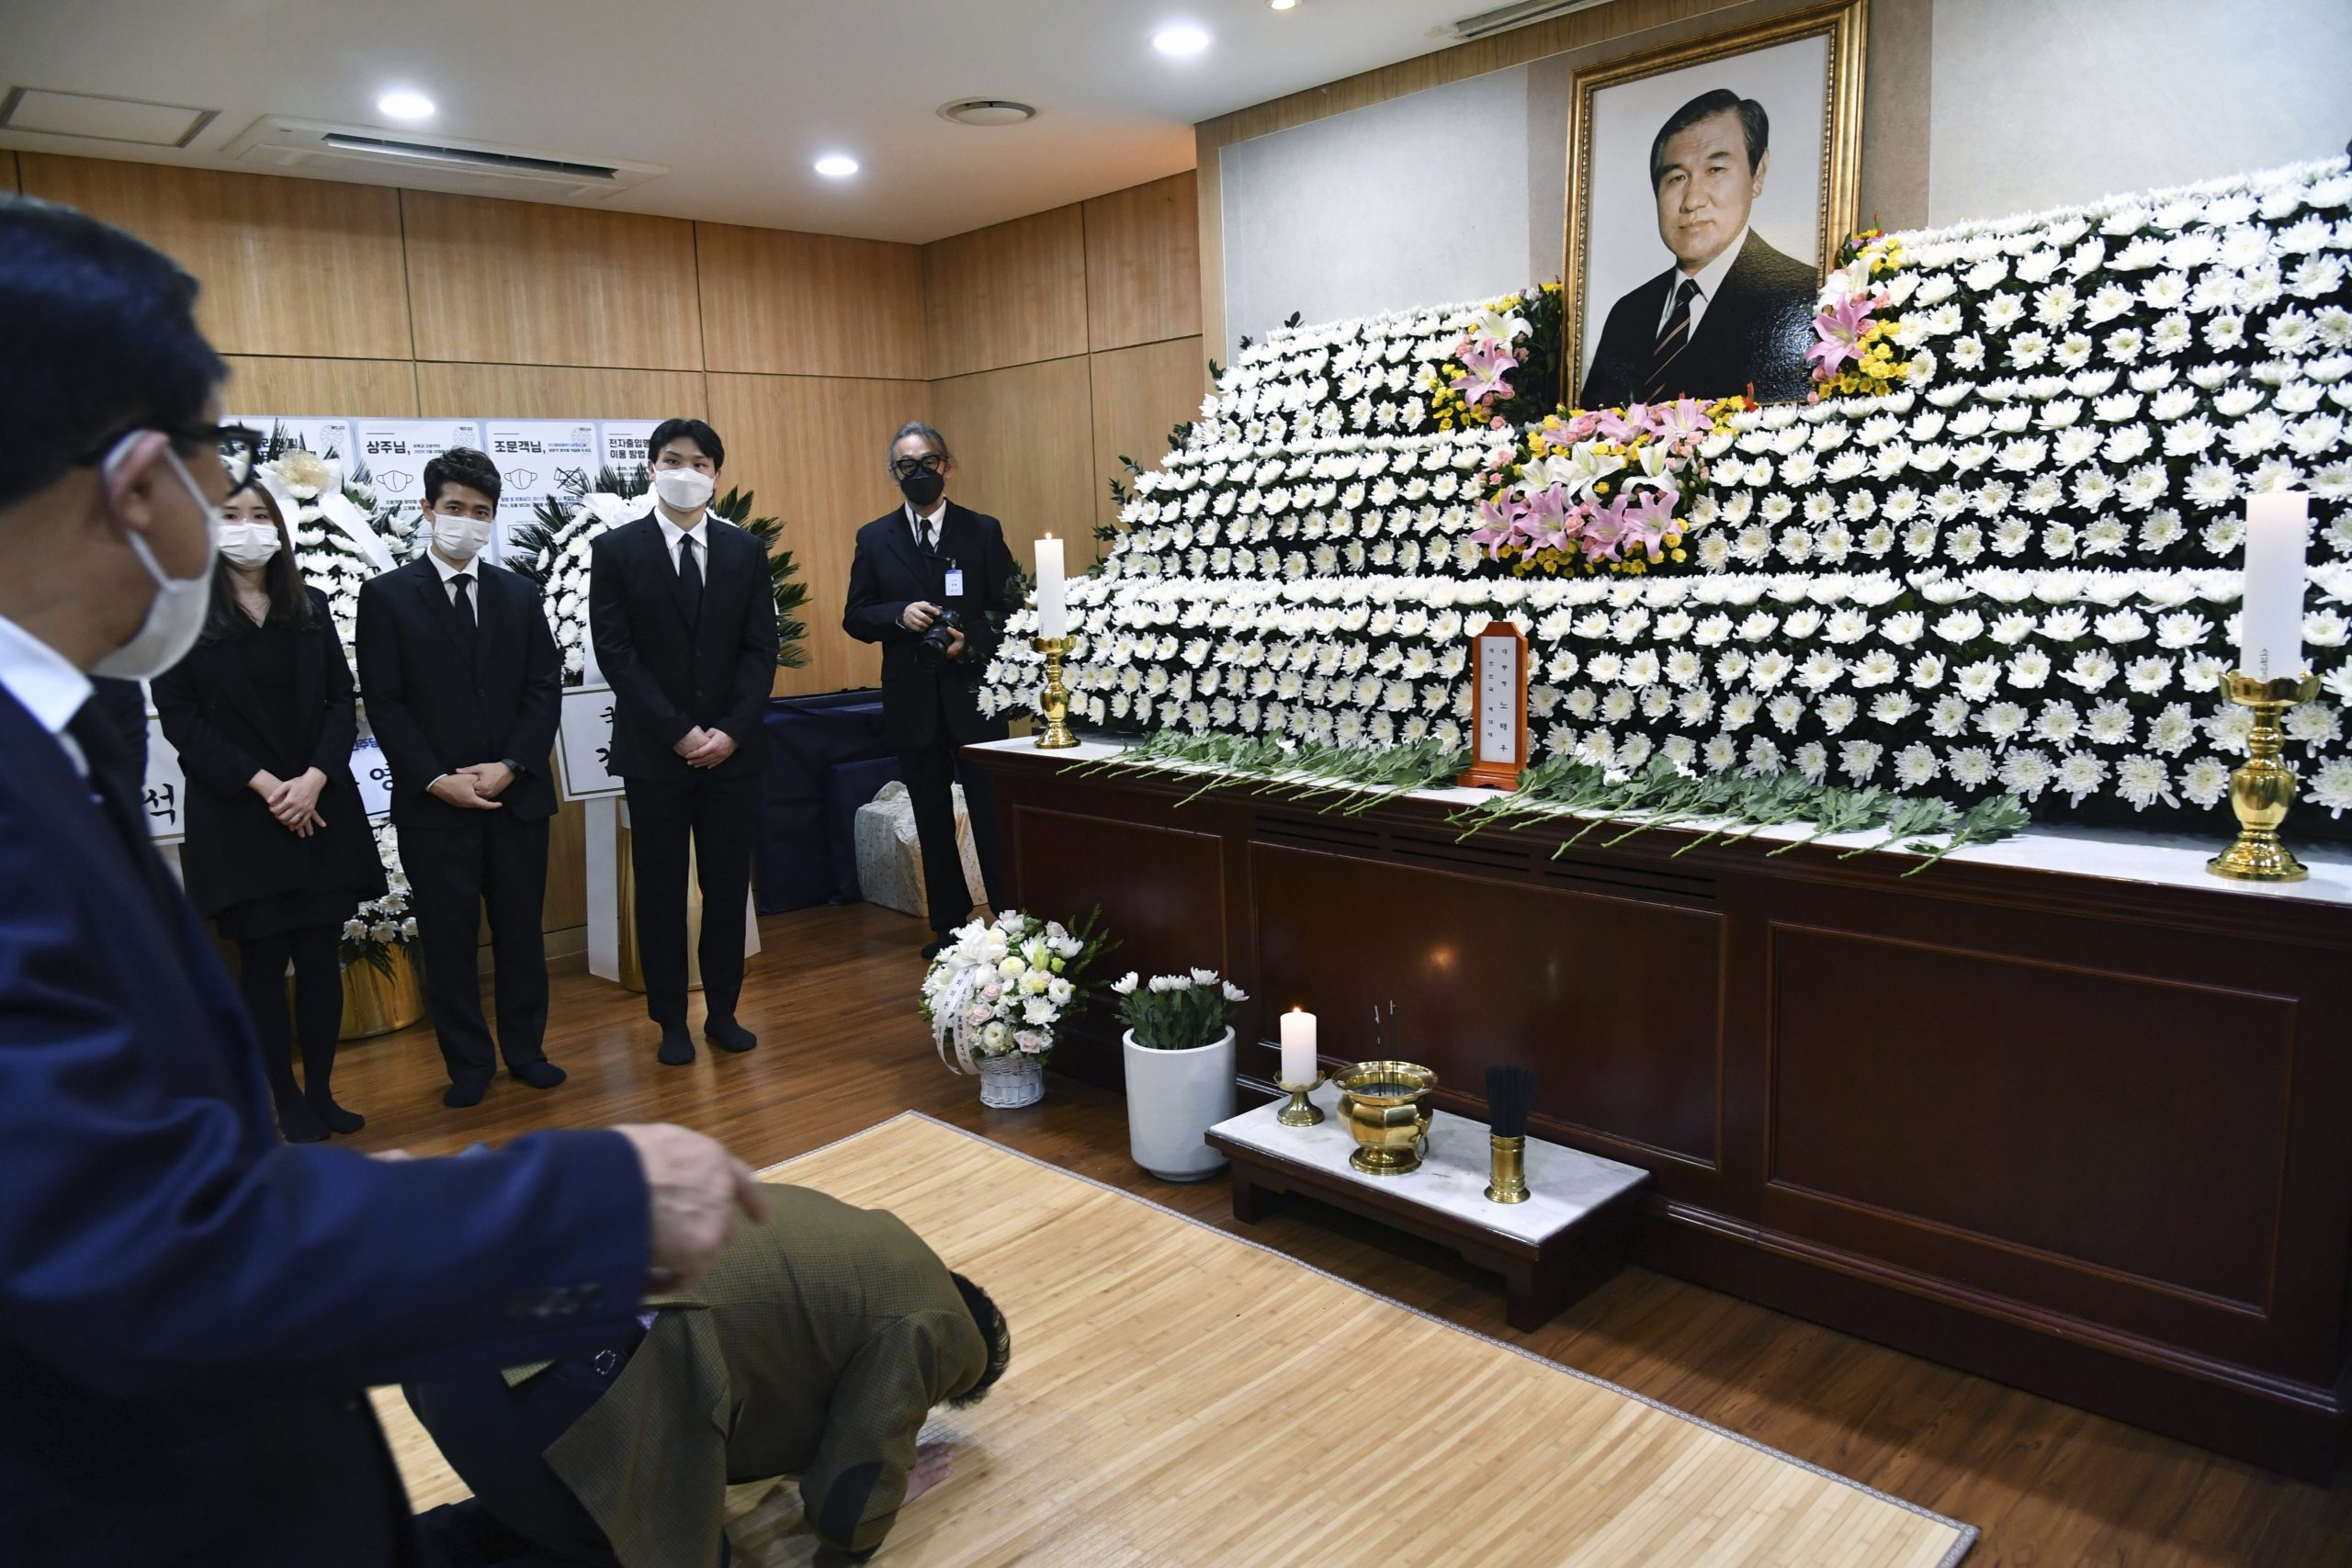 韩国将举行国葬 卢泰愚遗言盼获国民宽恕